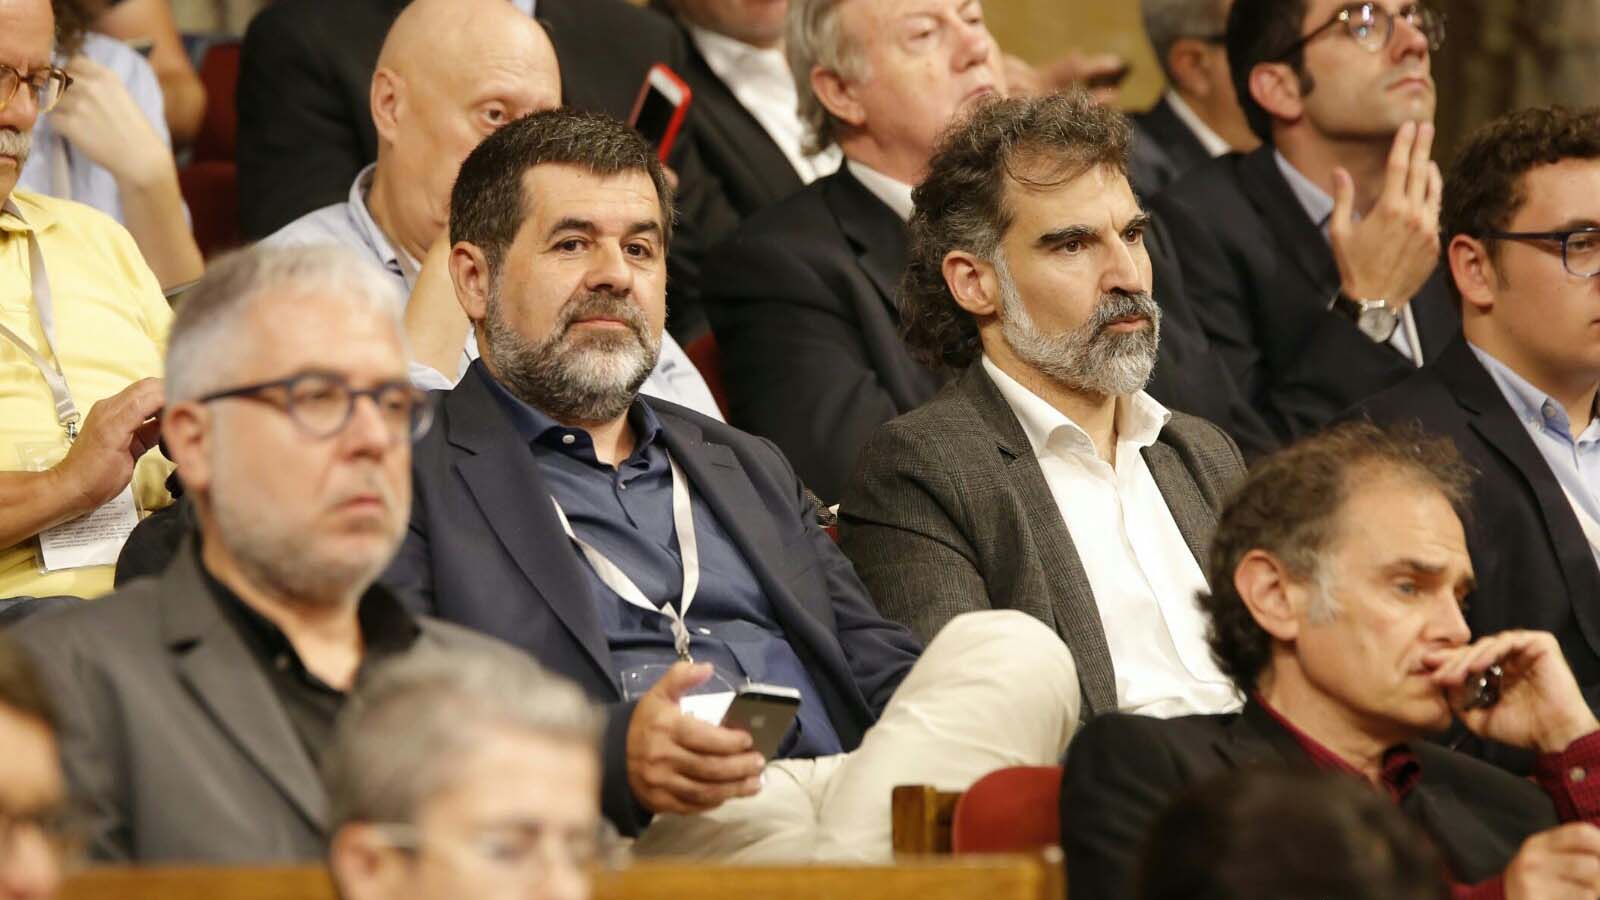 Jordi Sànchez y Jordi Cuixart obtuvieron detención provisional sin fianza por el presunto delito de sedición en relación al proceso separatista catalán